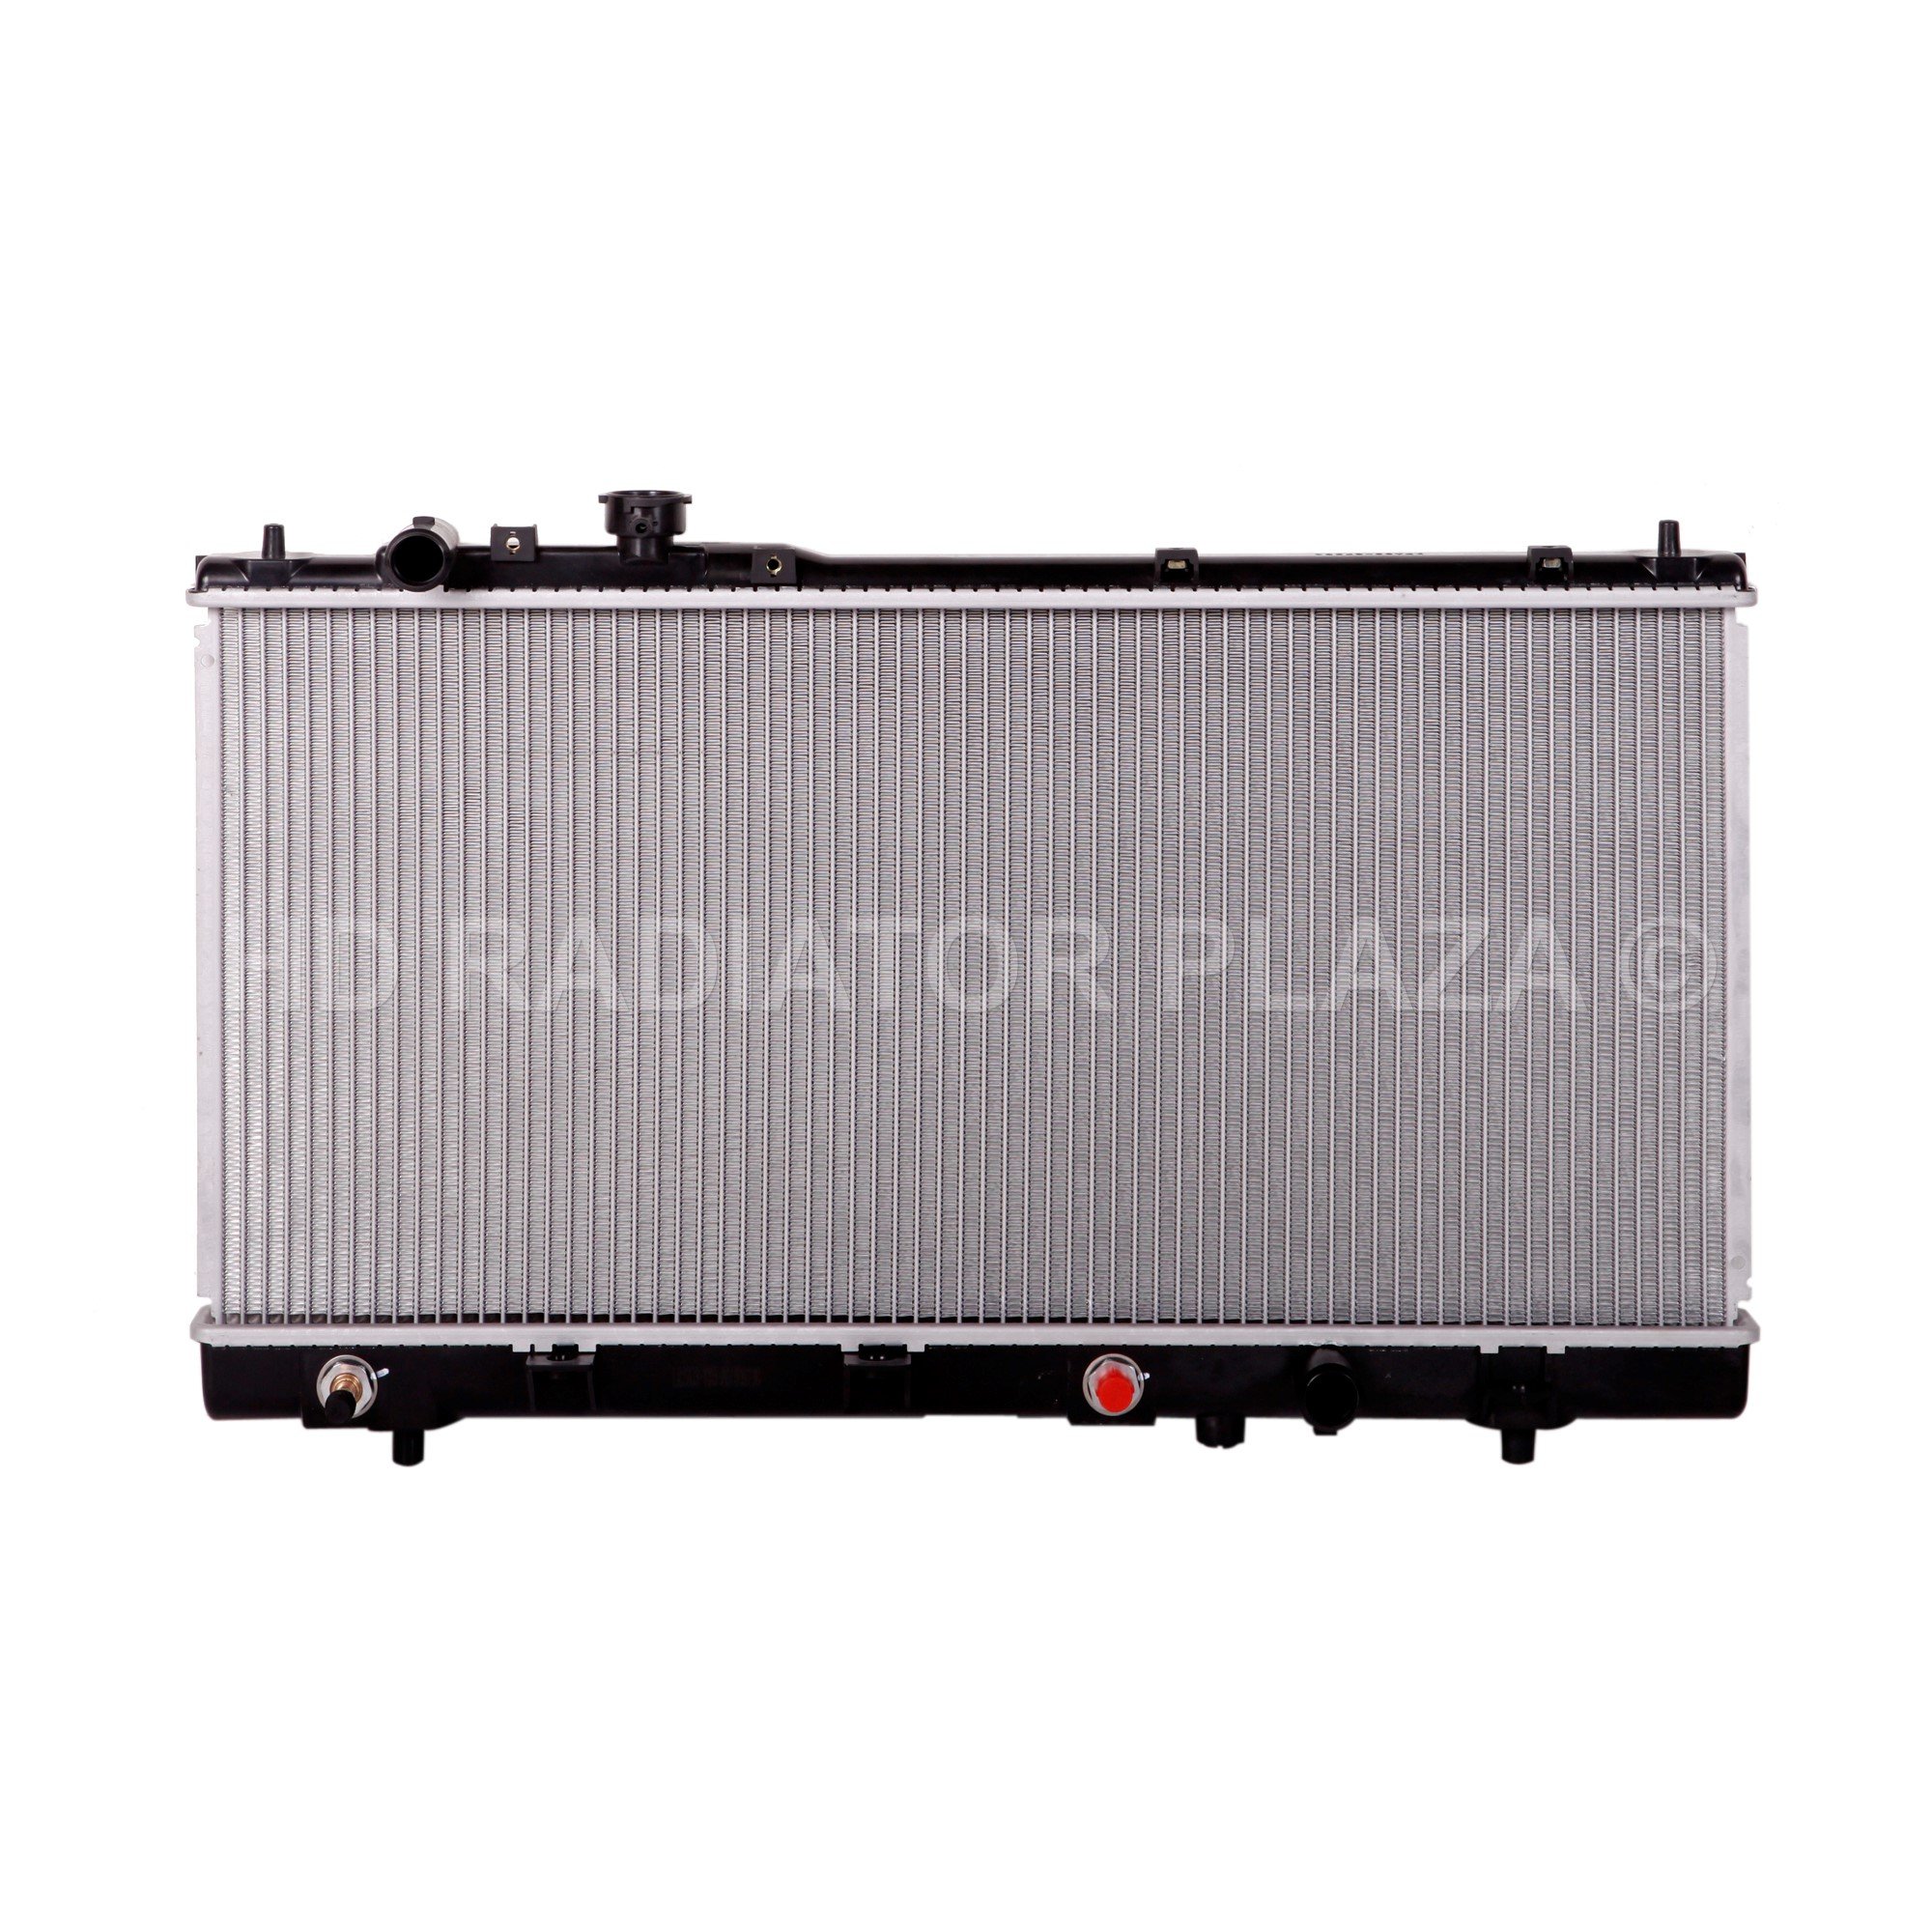 Radiator for 99-03 Mazda Protege, Protege5, 1.6L 2.0L I4